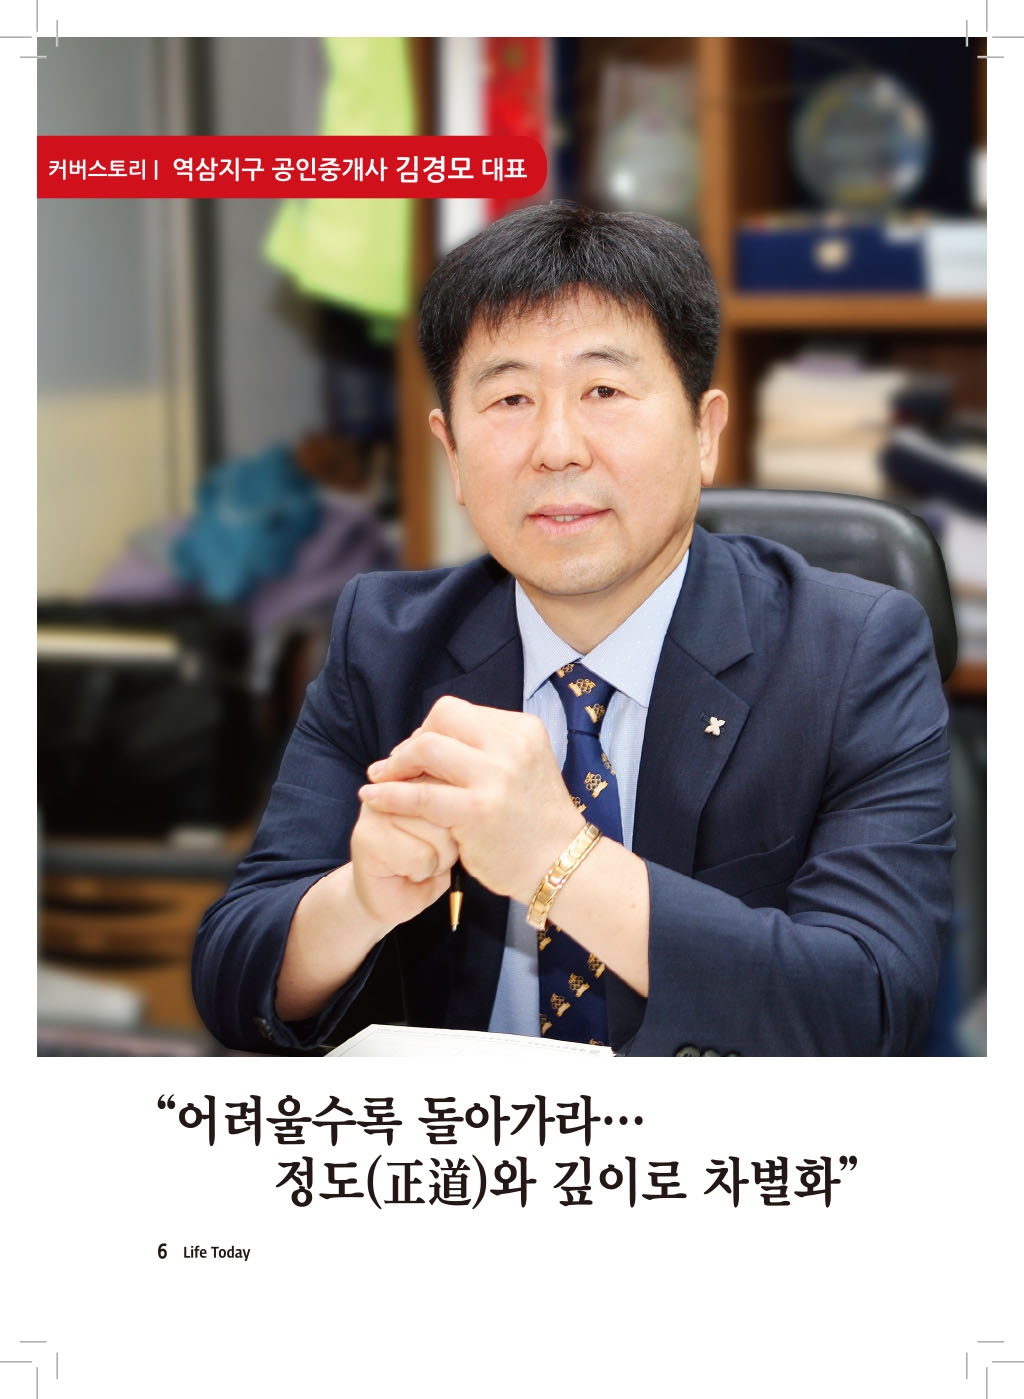 커버스토리-역삼지구 공인중개사 김경모 대표 (19년 8월)